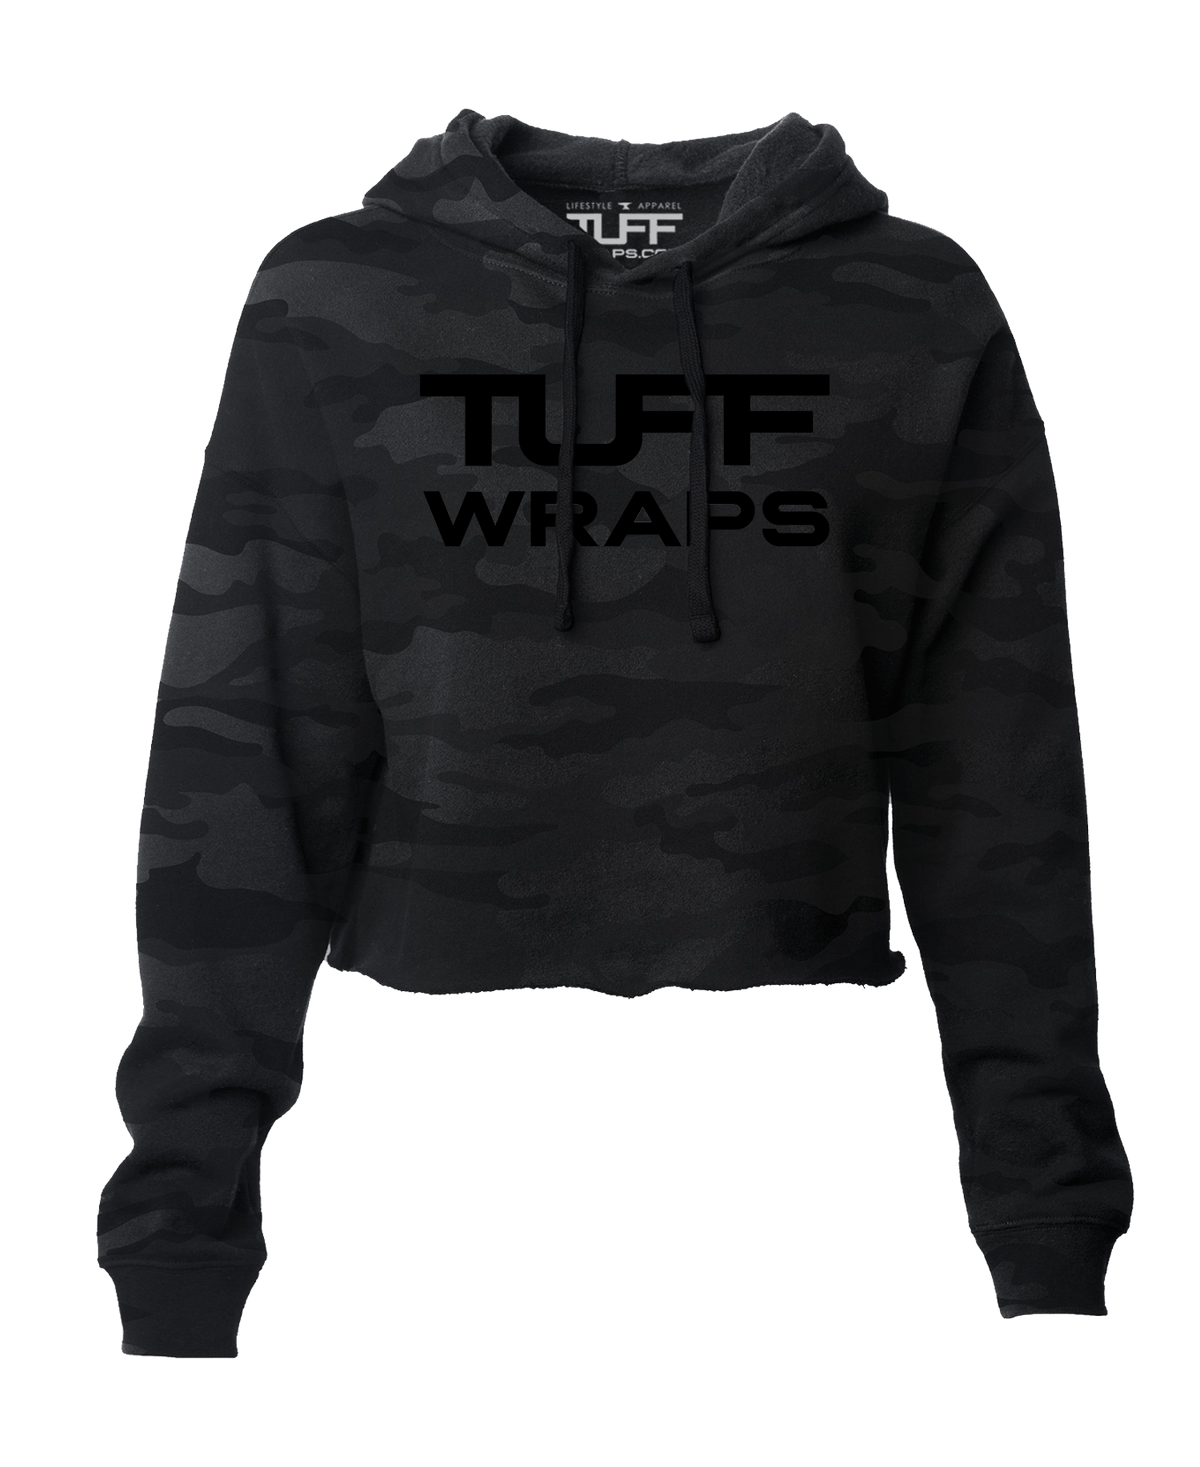 Tuffwraps Global Hooded Cropped Fleece - Black Camo Women&#39;s Outerwear